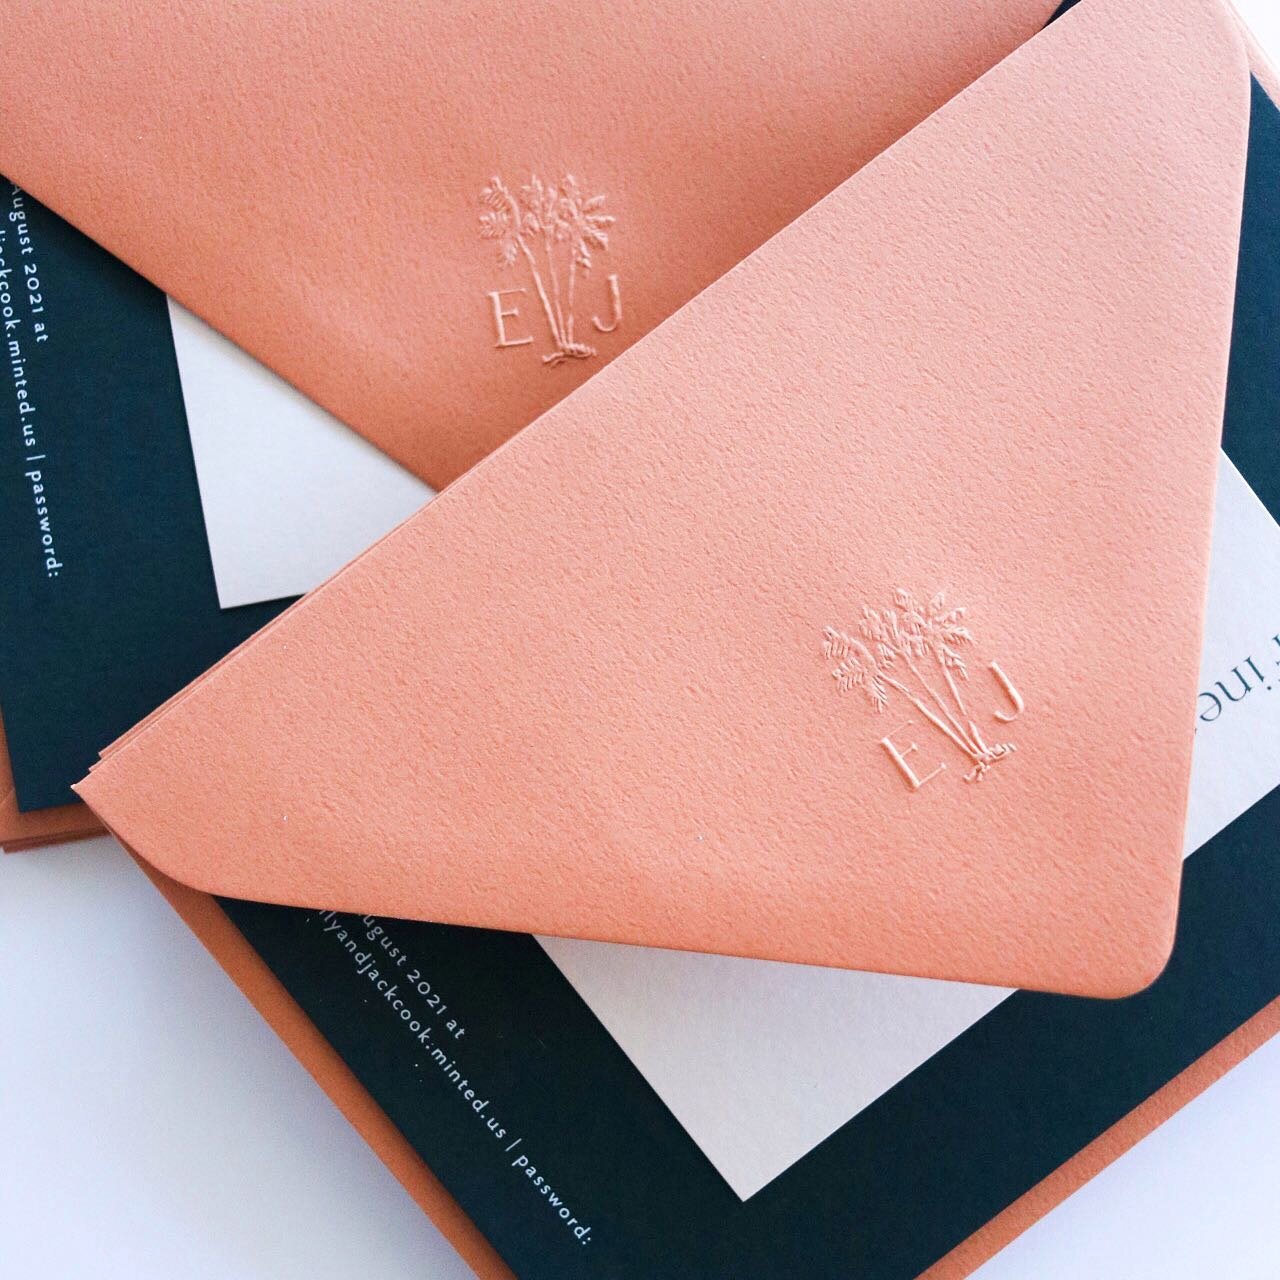 Nothing like a lush embossing stamp on textured envelopes ✨✨✨ 
.
.
.
.
.
.
.
.
.
#weddinginvitation #brisbaneinvitations #weddinginspiration #savethedates #onthedaystationery #wedding #brisbaneweddingdesign #weddingstationery #savethedate #brisbanewe